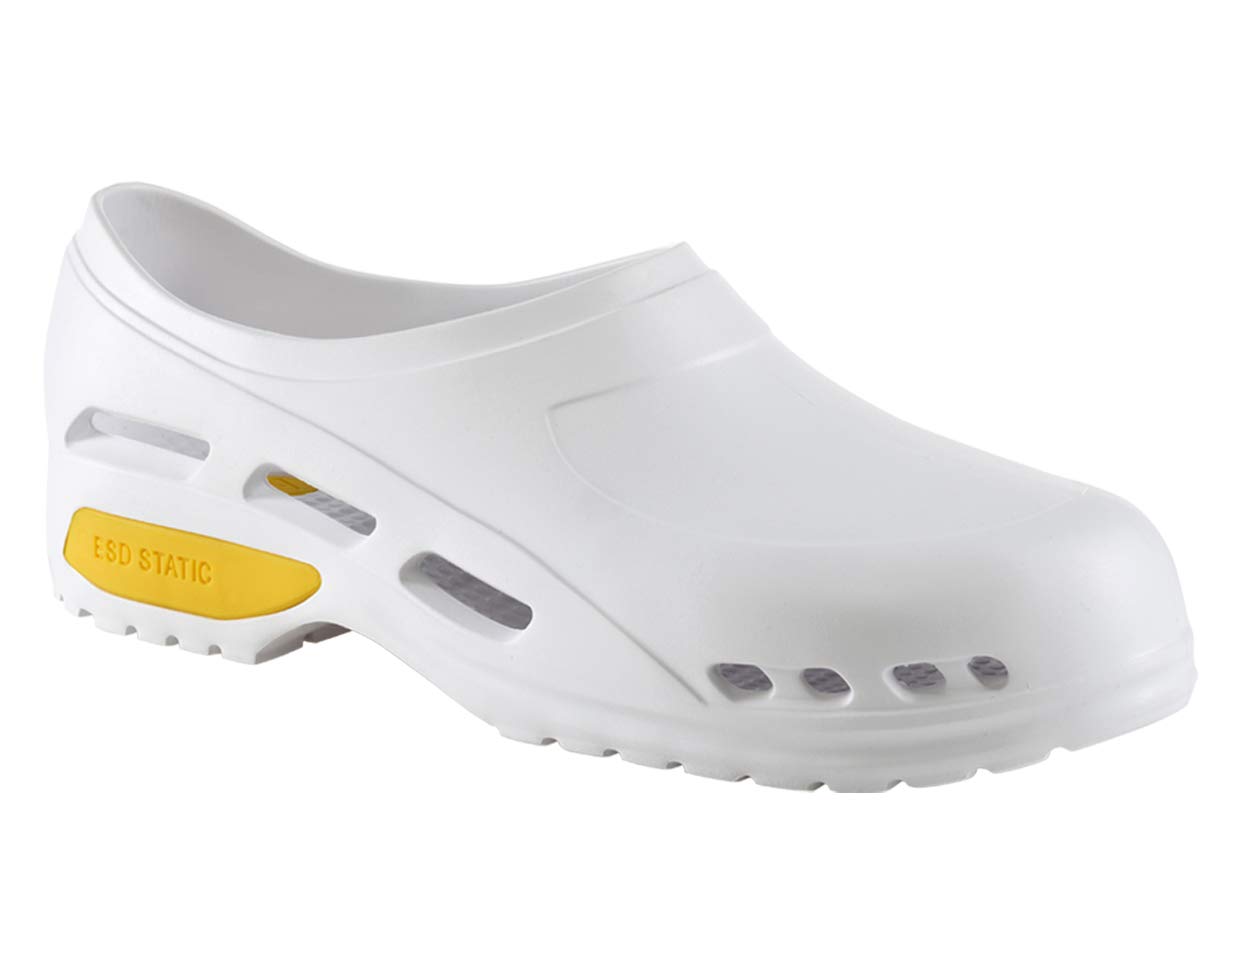 Rekordsan Sanitar-Schuhe, leicht, Weiß, Größe 37, 1 Stück